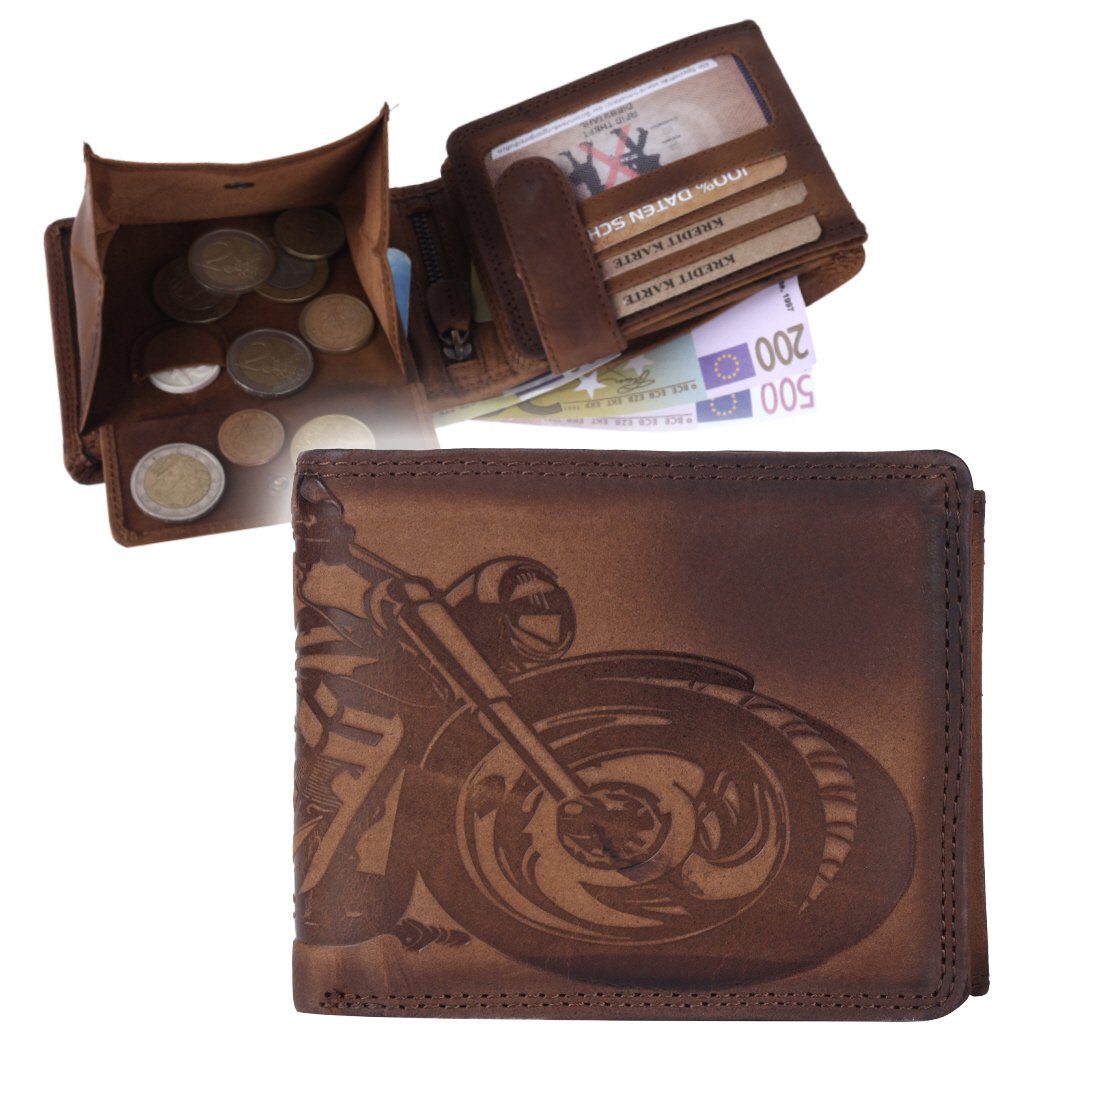 Leder Börse Brieftasche RFID Büffelleder Lederbörse mit Portemonnaie, Schutz Männerbörse SHG Herren Münzfach Geldbörse